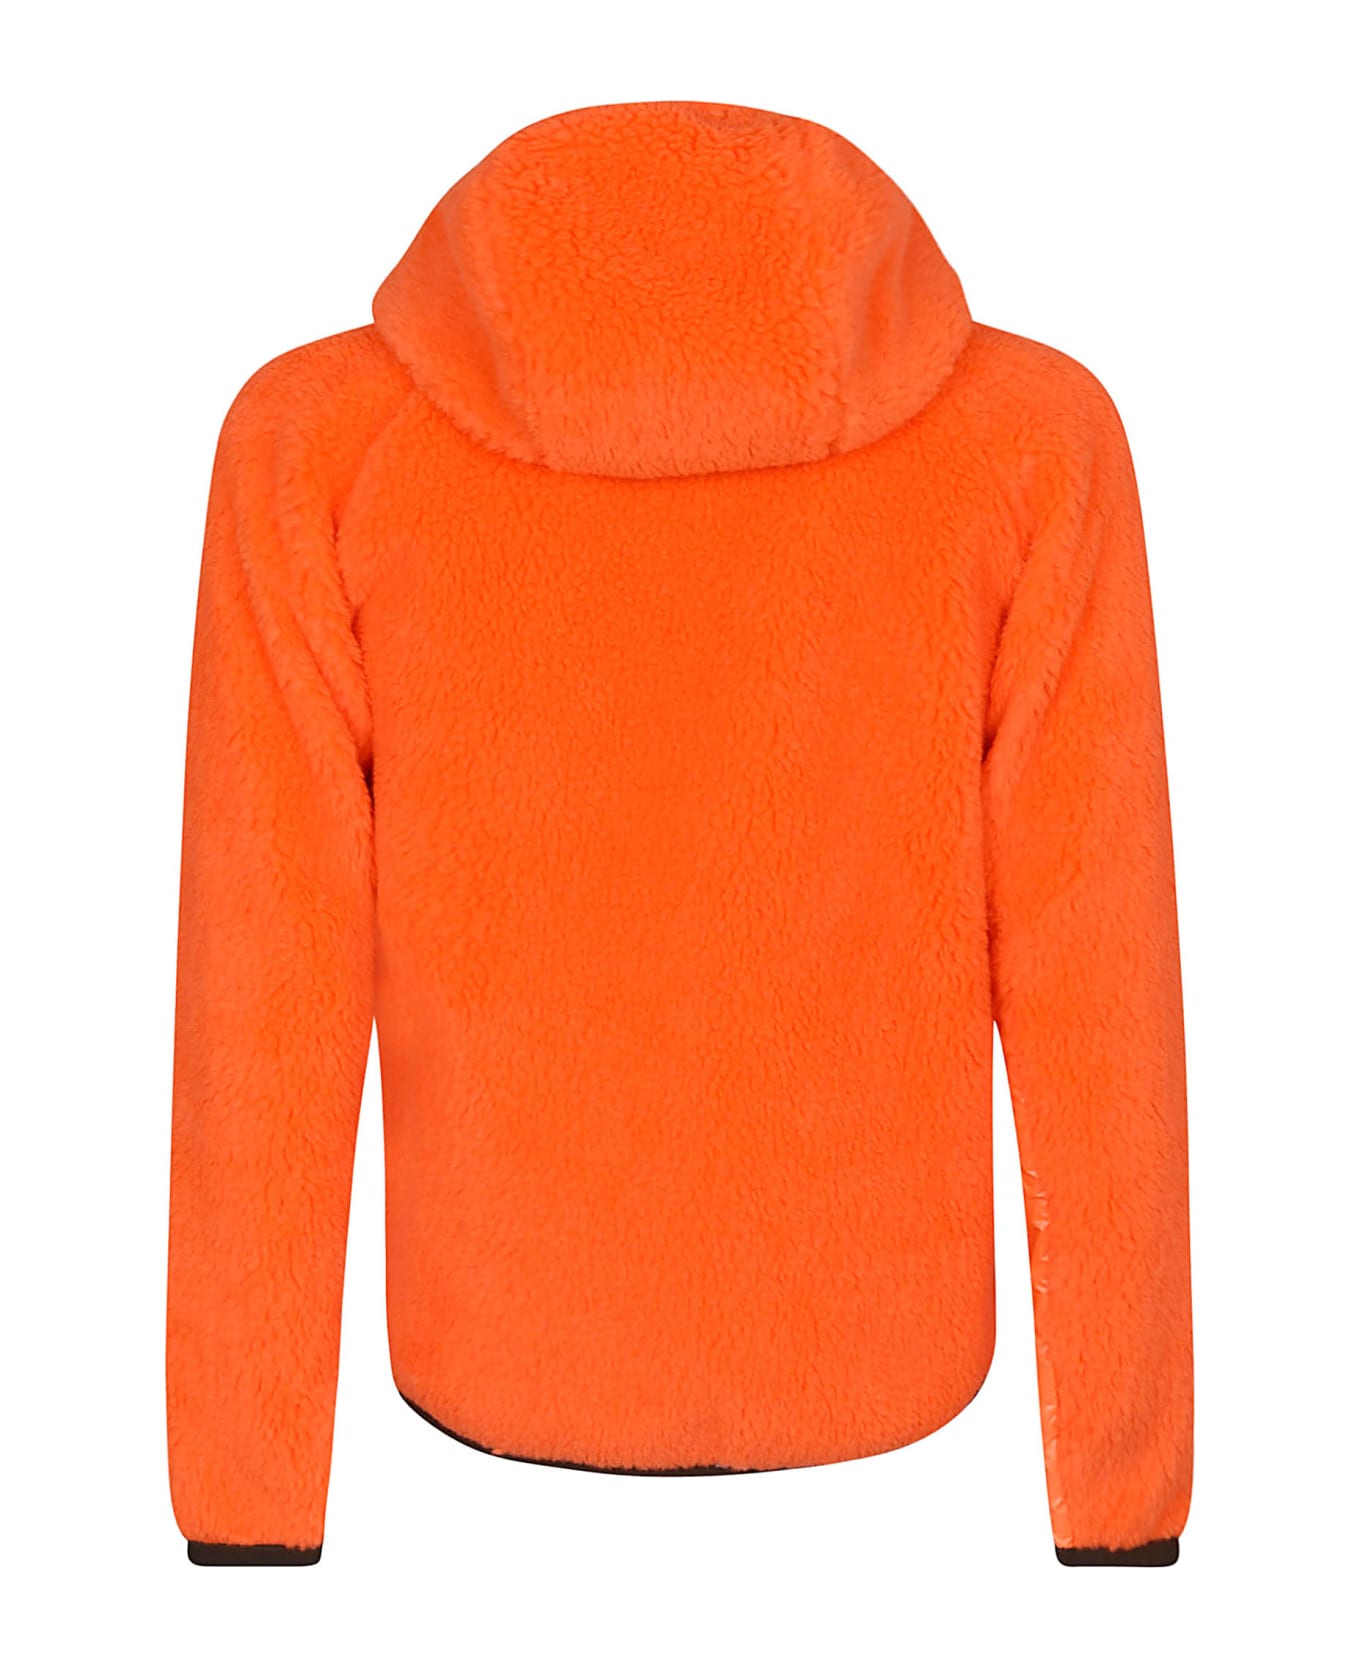 Moncler Grenoble Fur Embellished Zip Jacket - Open Orange